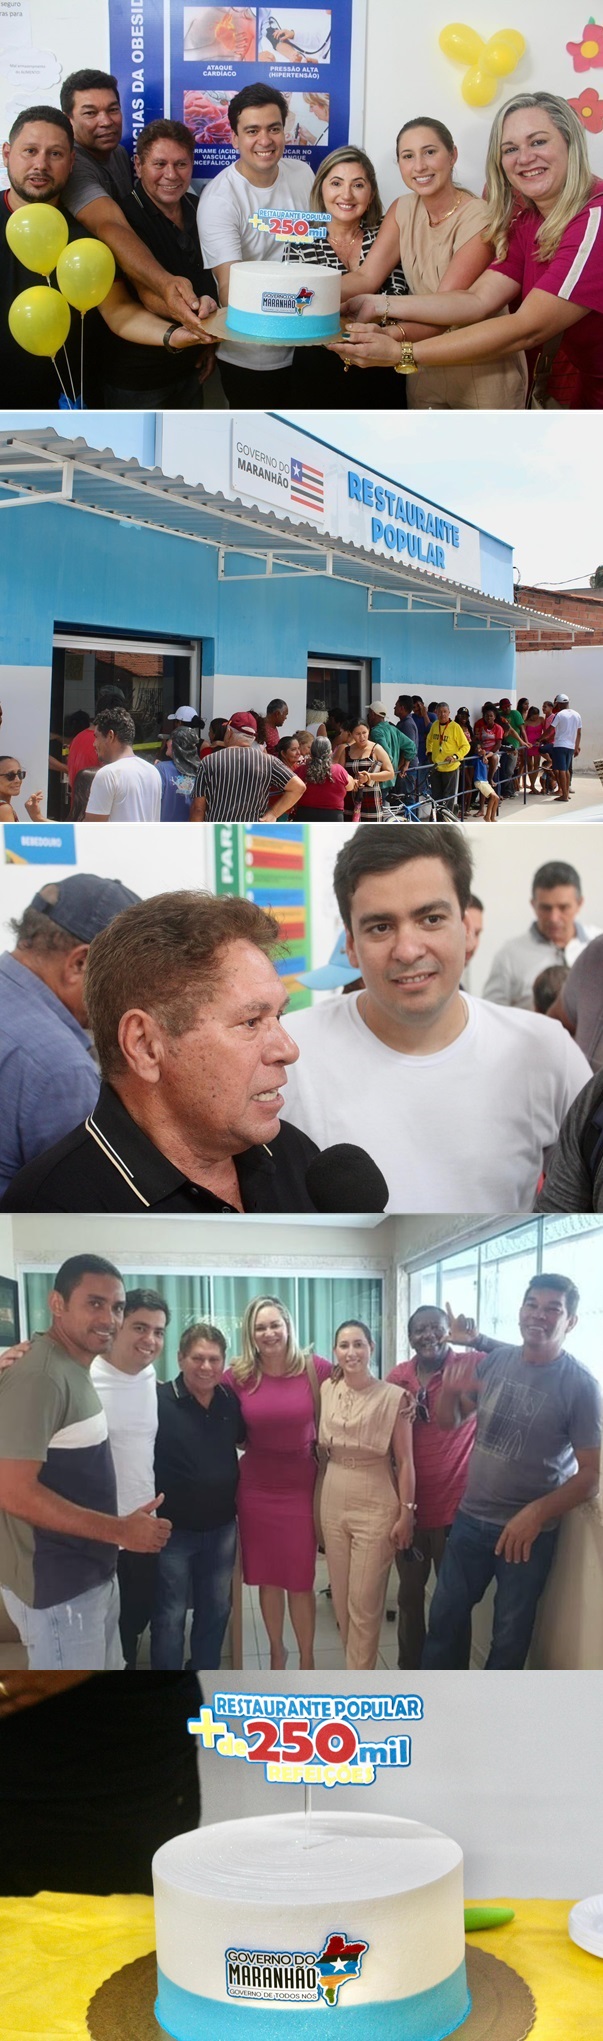 Paulo Casé durante visita à Raposa e destaque a marca de 250 mil refeições servidas no Restaurante Popular do Estado no município.